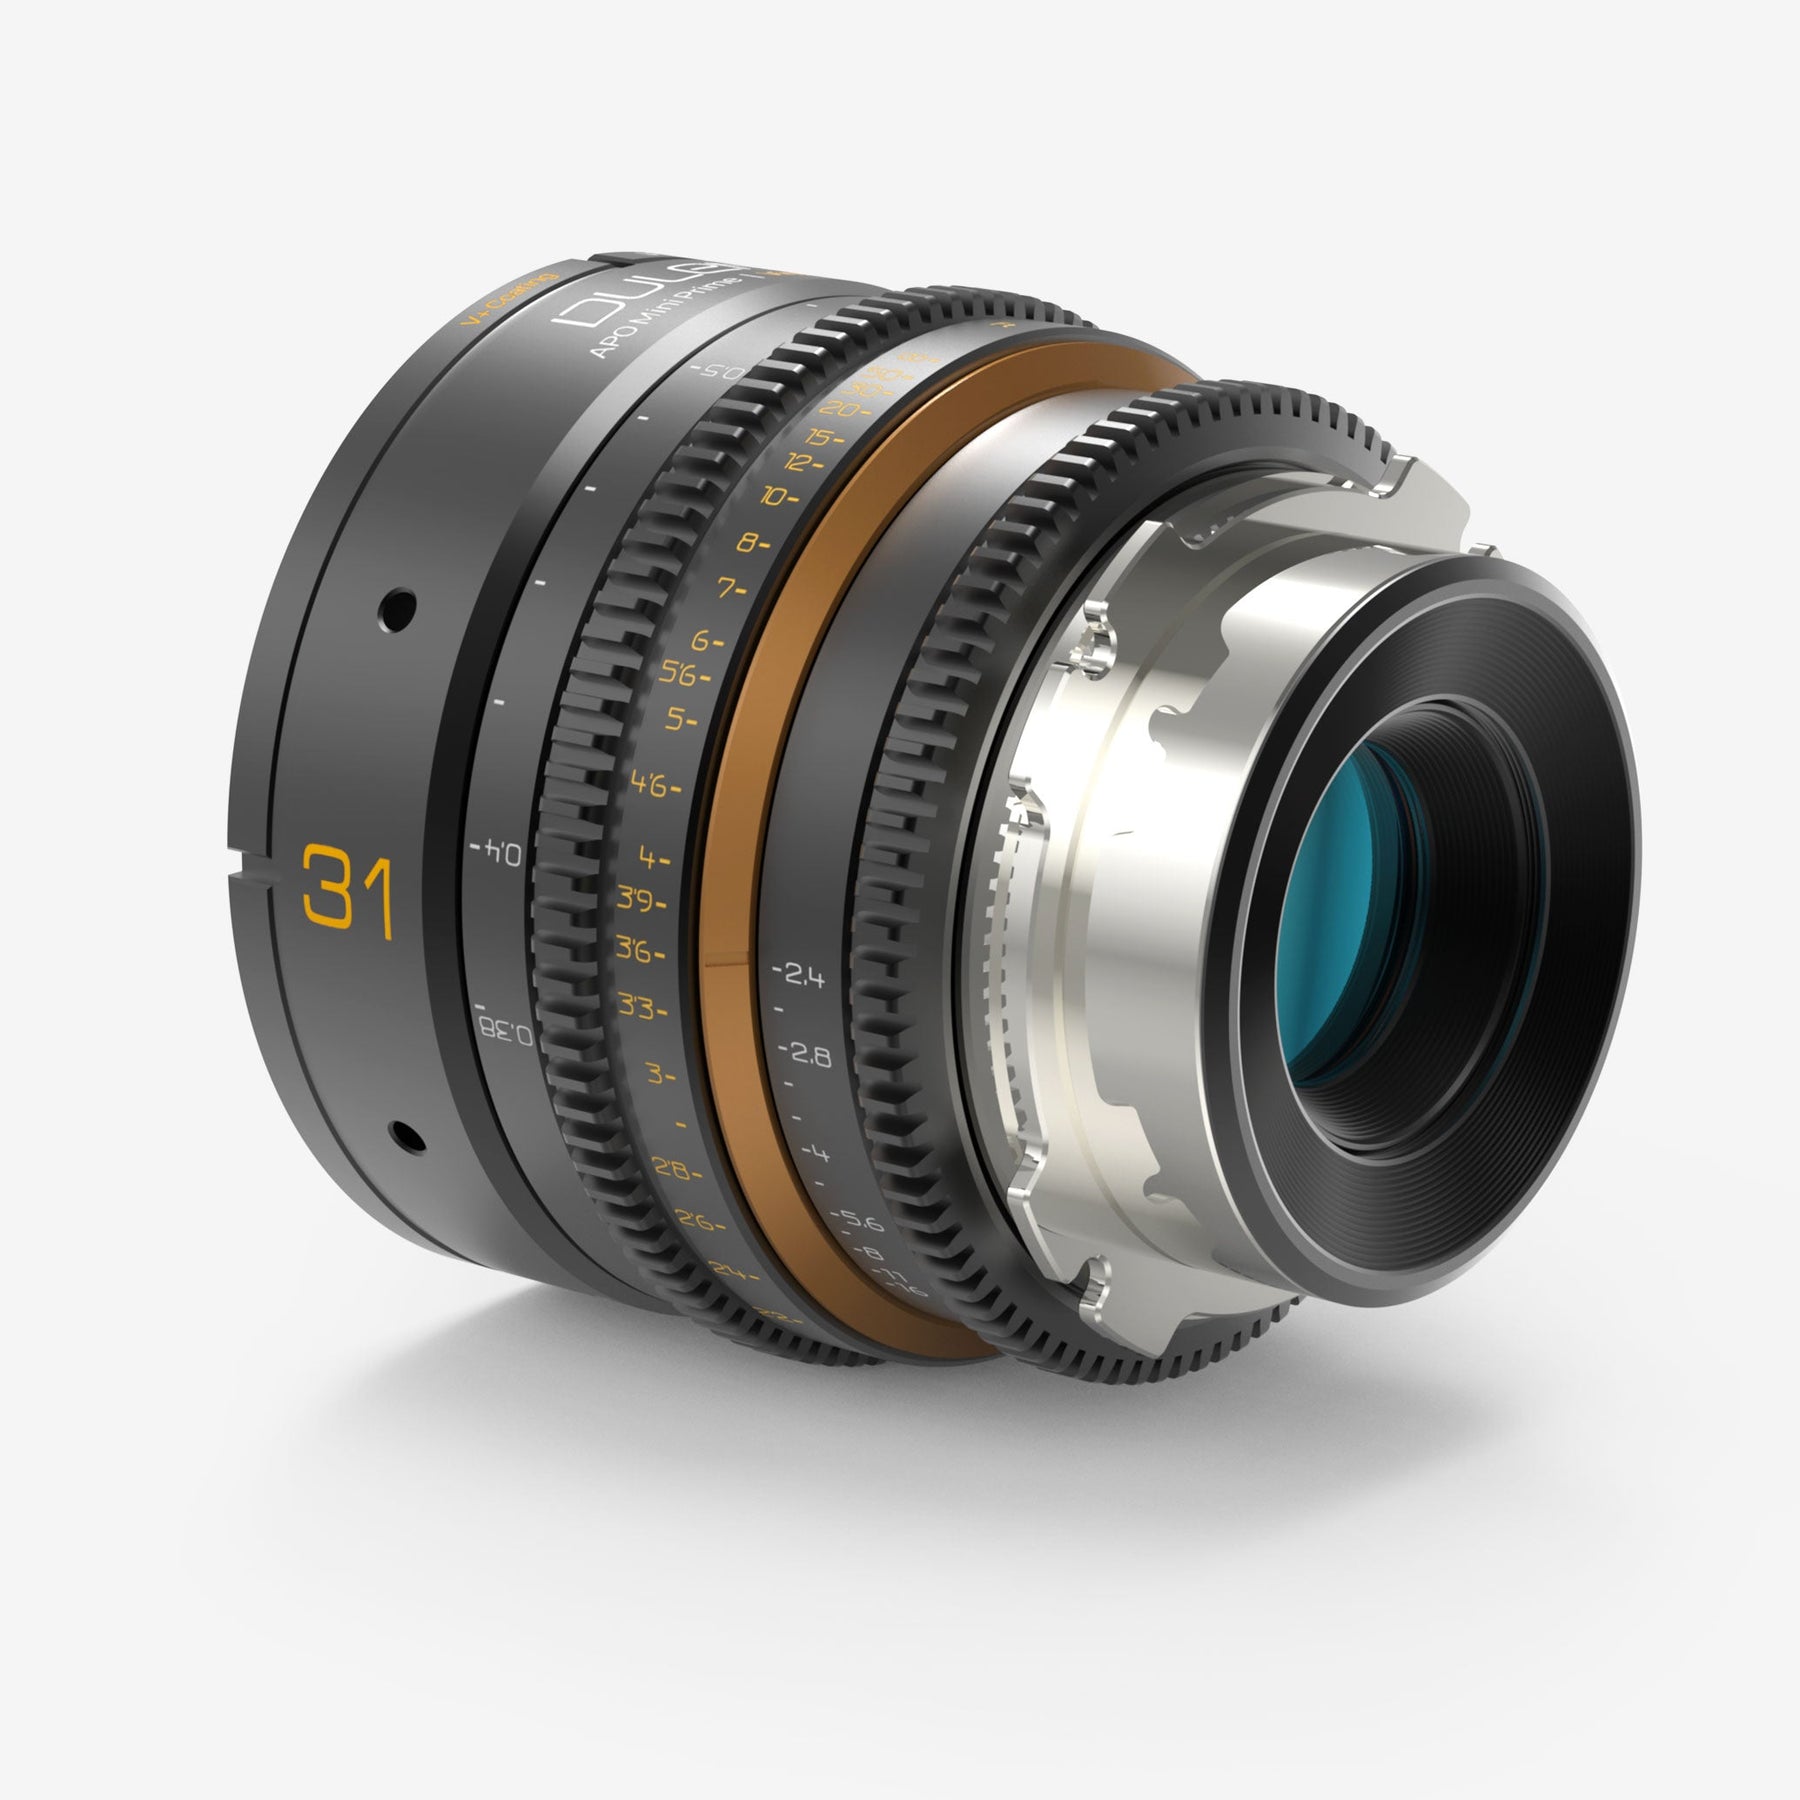 Dulens APO Mini Prime 31mm T2.4 Lens